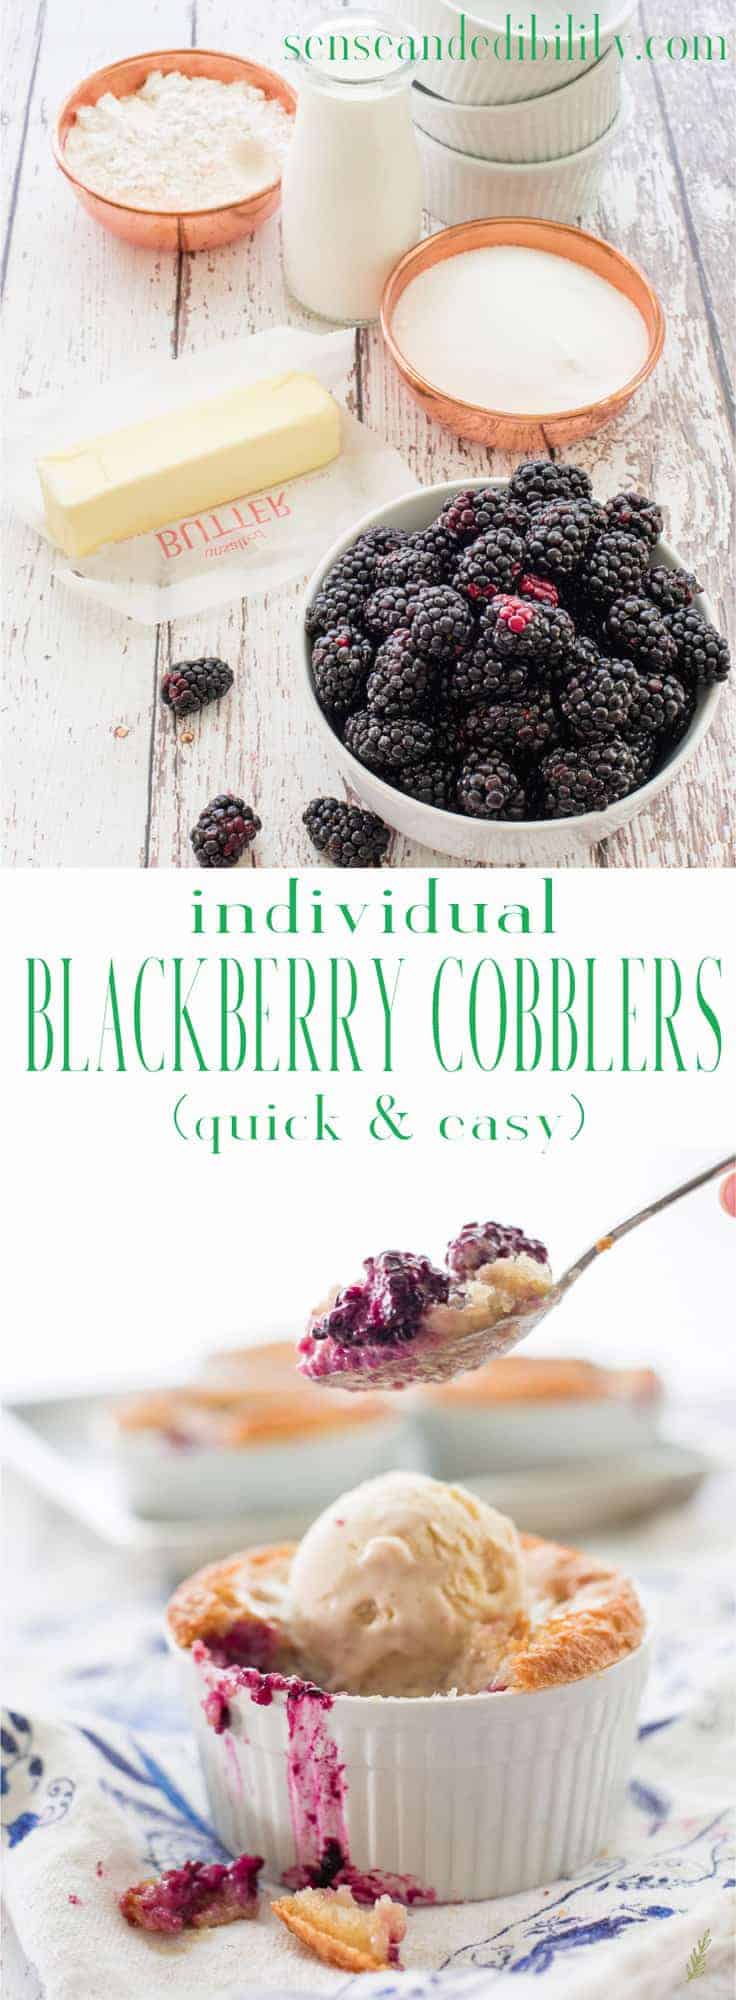  Blackberry Cobblers serverar sommarens frukter på det mest läckra sättet. Toppad med en smetskorpa, denna efterrätt är den perfekta söta avslutningen på dina sommarmåltider. Glöm inte en generös skopa frusen vaniljsås att servera med den! # blackberrycobbler #skomakare #berrycobbler #dessert #alamode via @ ediblesense